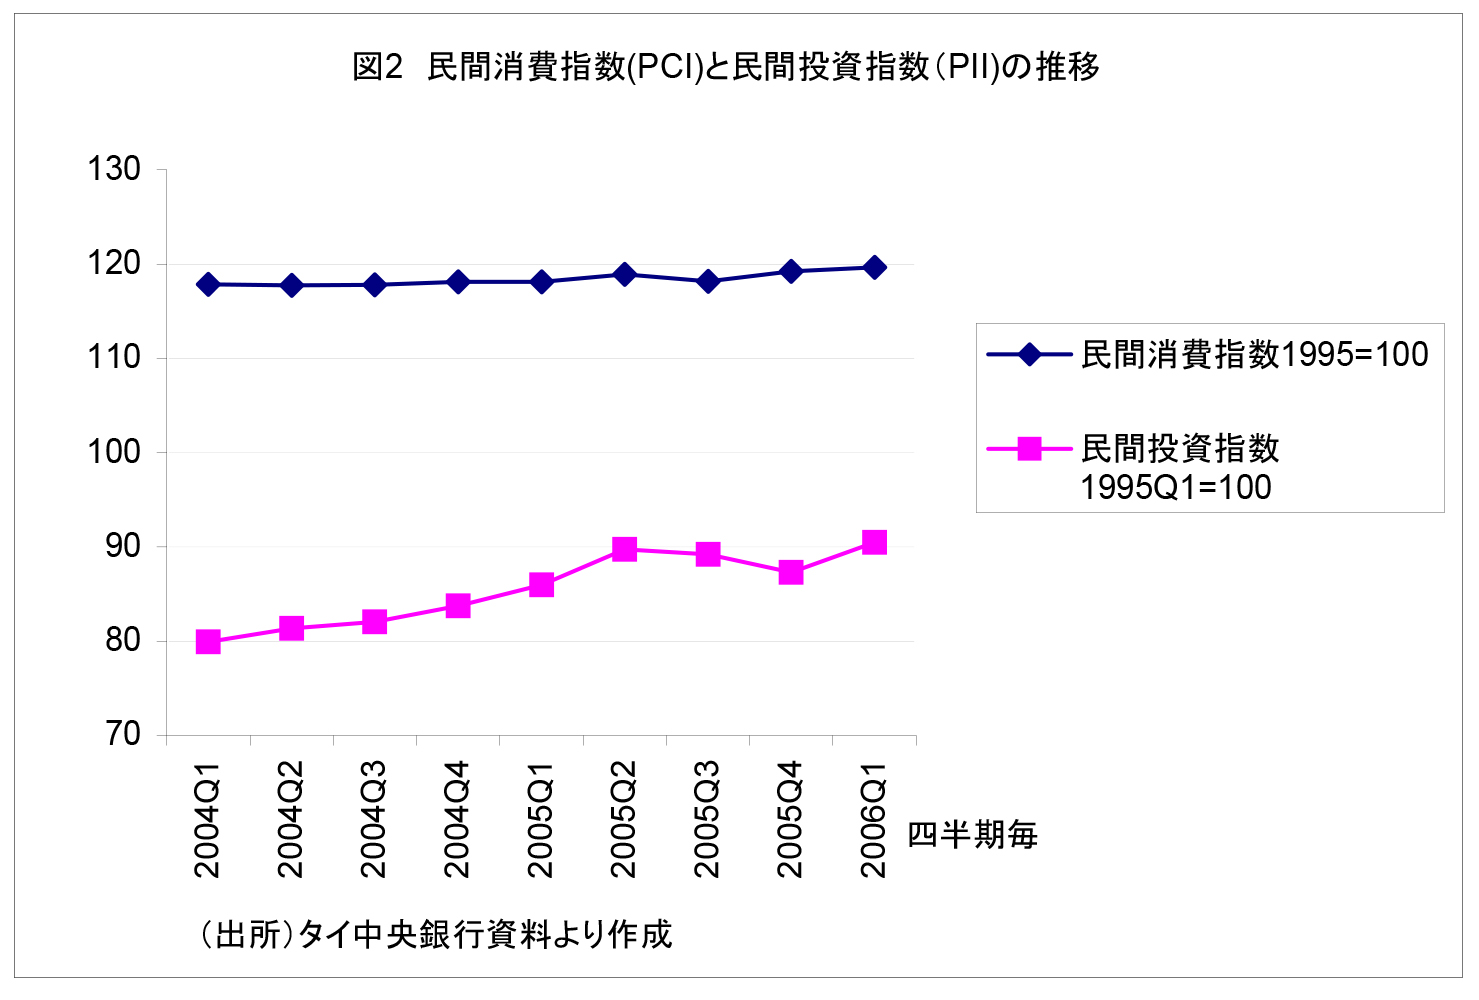 図2 民間消費指数(PCI)と民間投資指数（PII）の推移